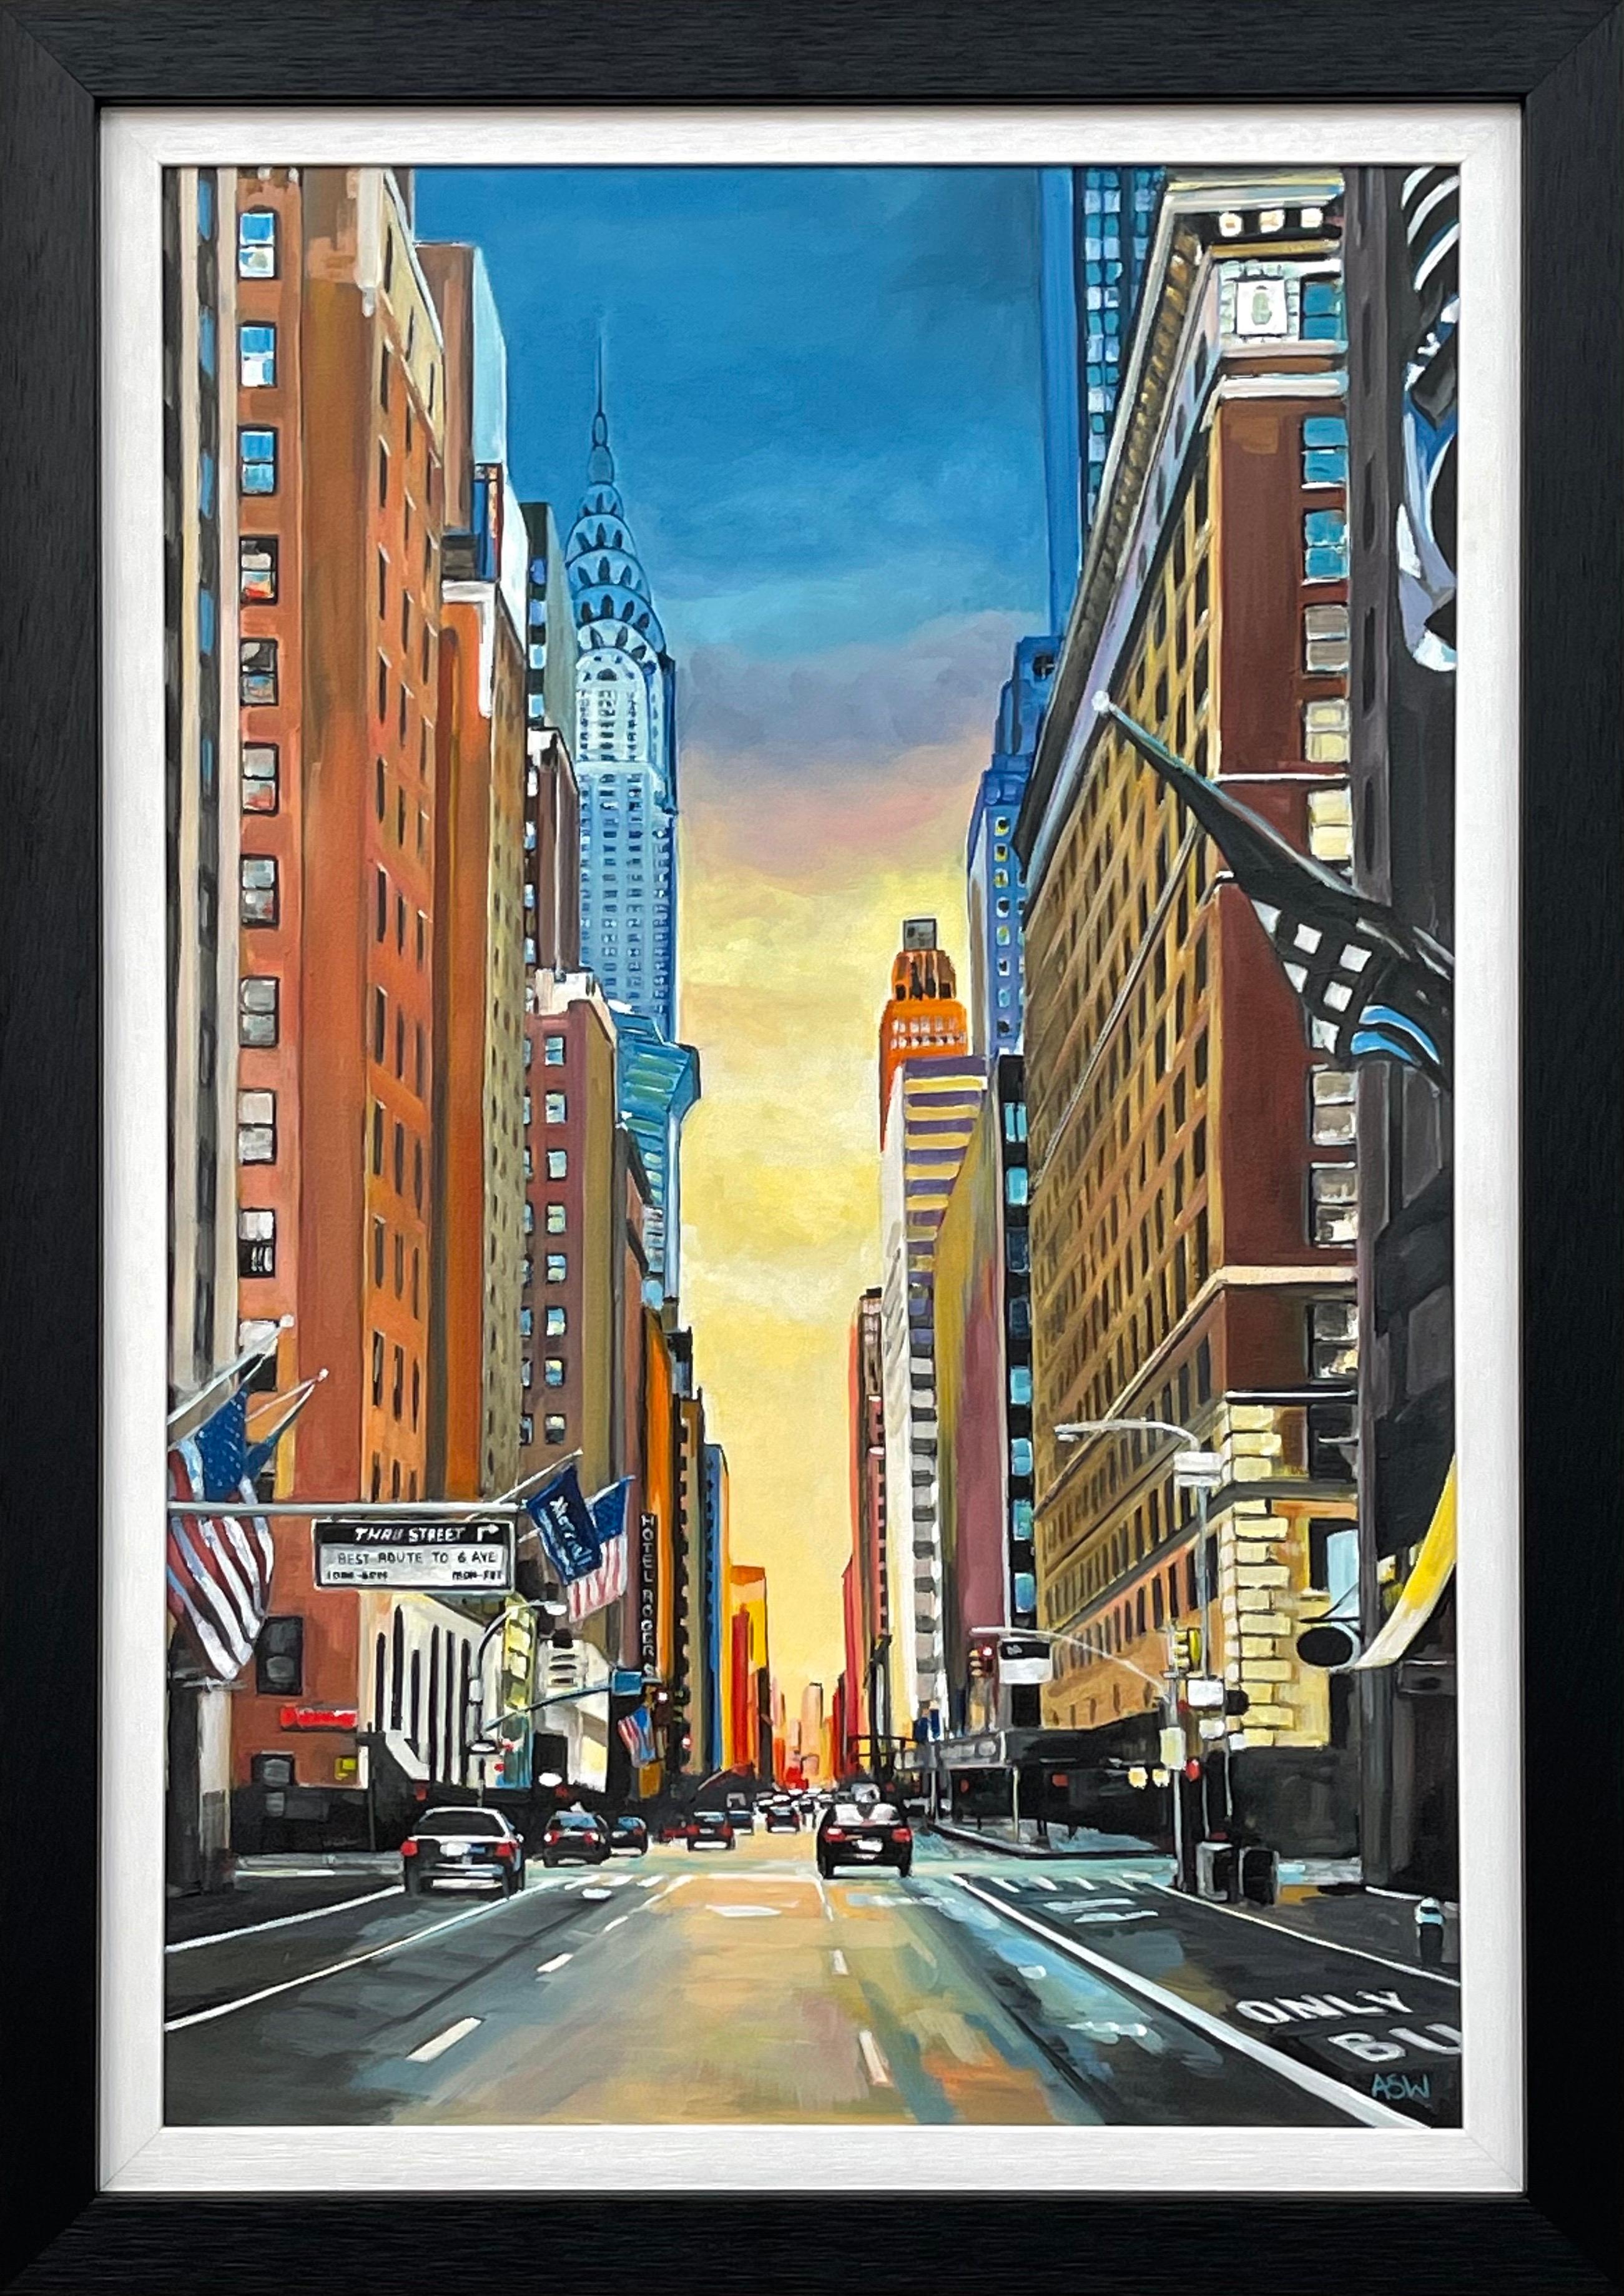 Chrysler Building 42nd Street New York City des zeitgenössischen britischen Künstlers